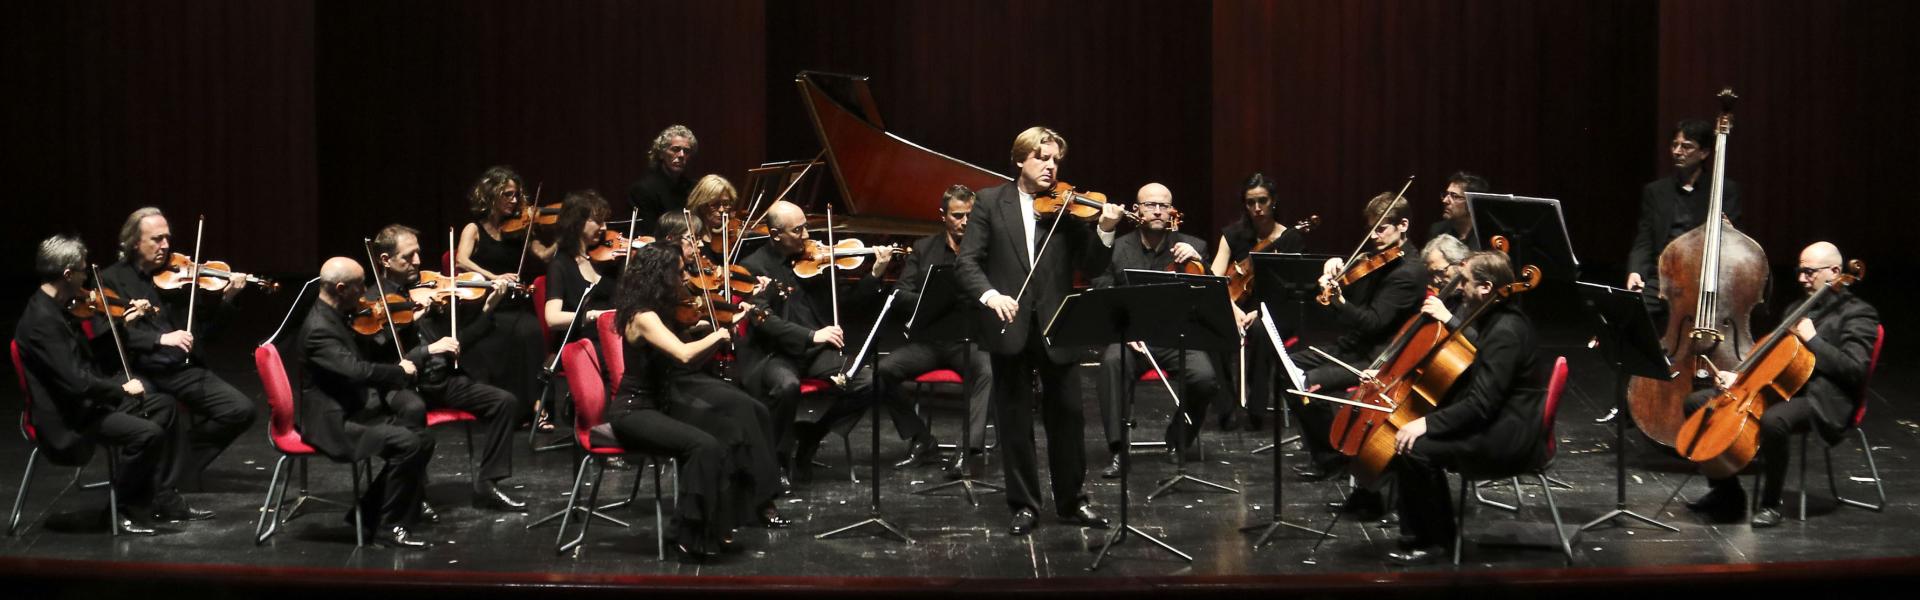 Orchestra Teatro Regio